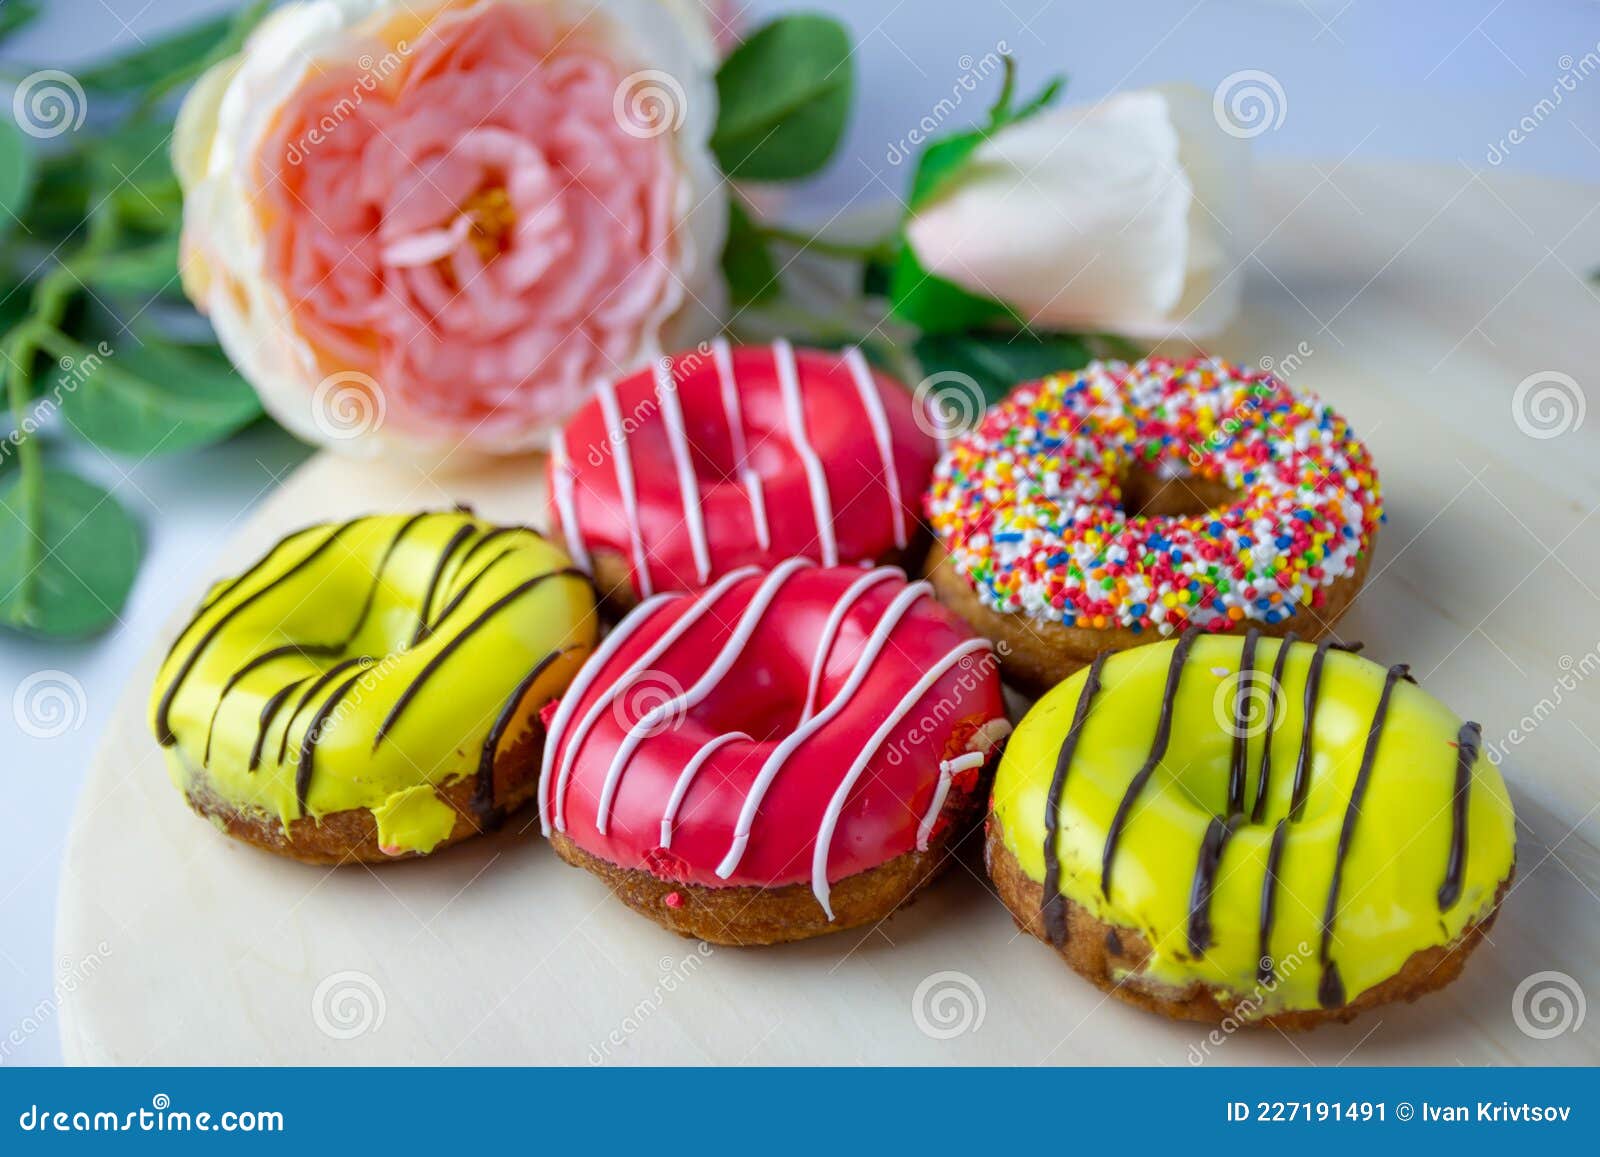 https://thumbs.dreamstime.com/z/muchos-donuts-de-colores-diferentes-yacen-en-un-soporte-madera-puesto-al-lado-una-rosa-el-concepto-dulces-para-hornear-se-puede-227191491.jpg